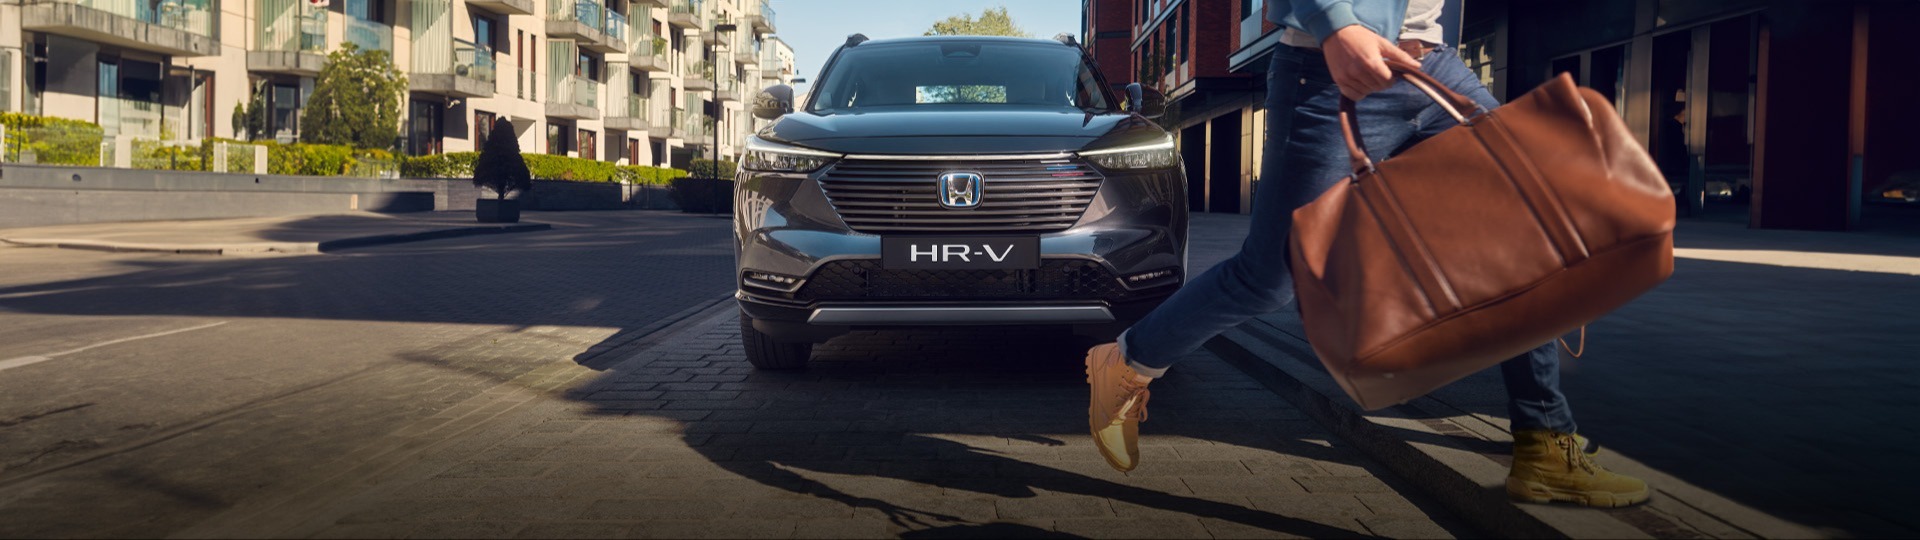 Honda Plaza  Mutluhan Ona giden yolu kısalttık HR-V